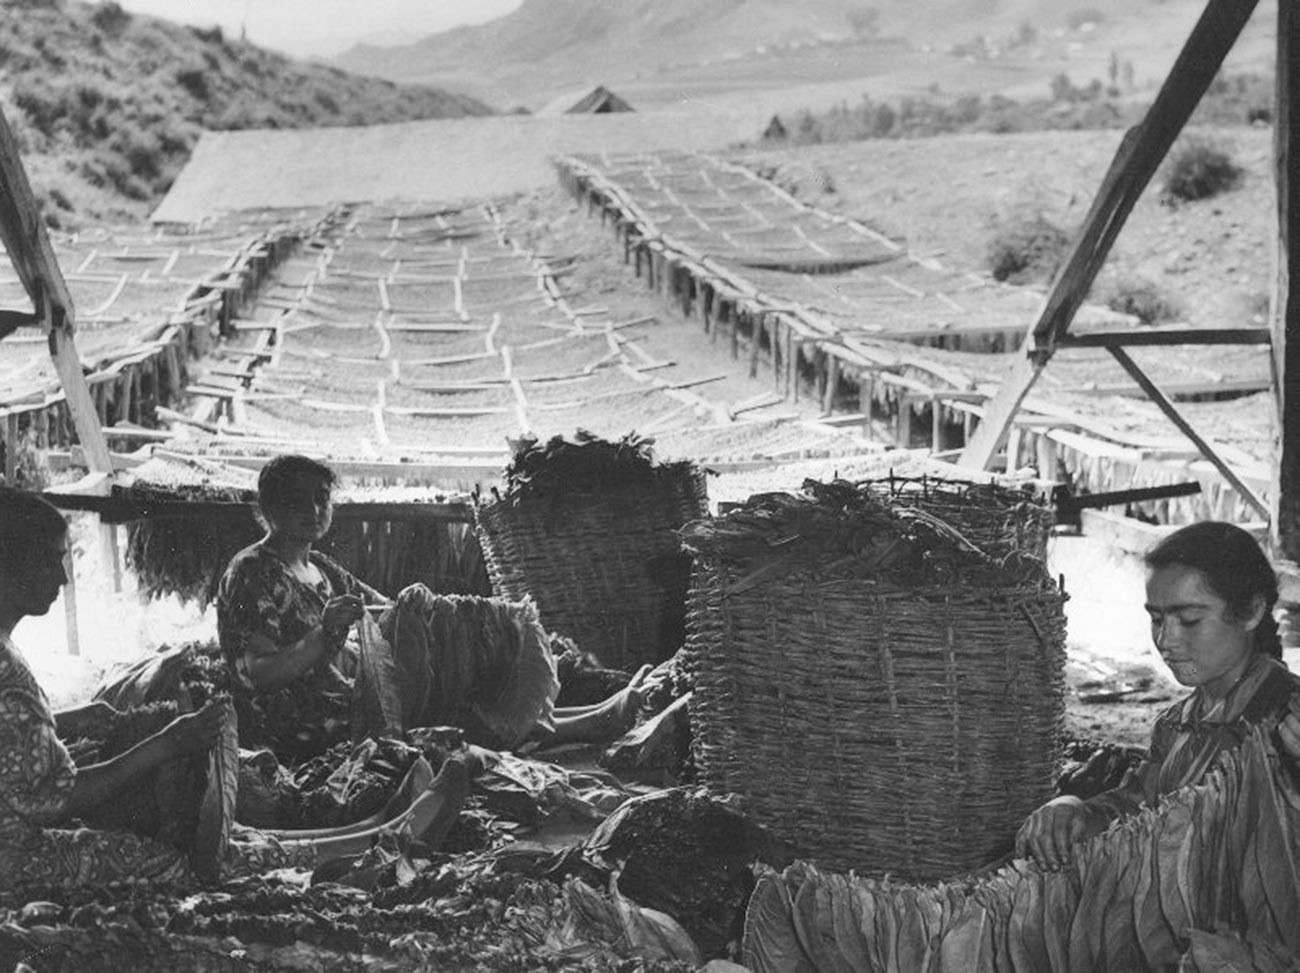 Des femmes travaillant avec des feuilles de tabac en Arménie, dans les années 1950

